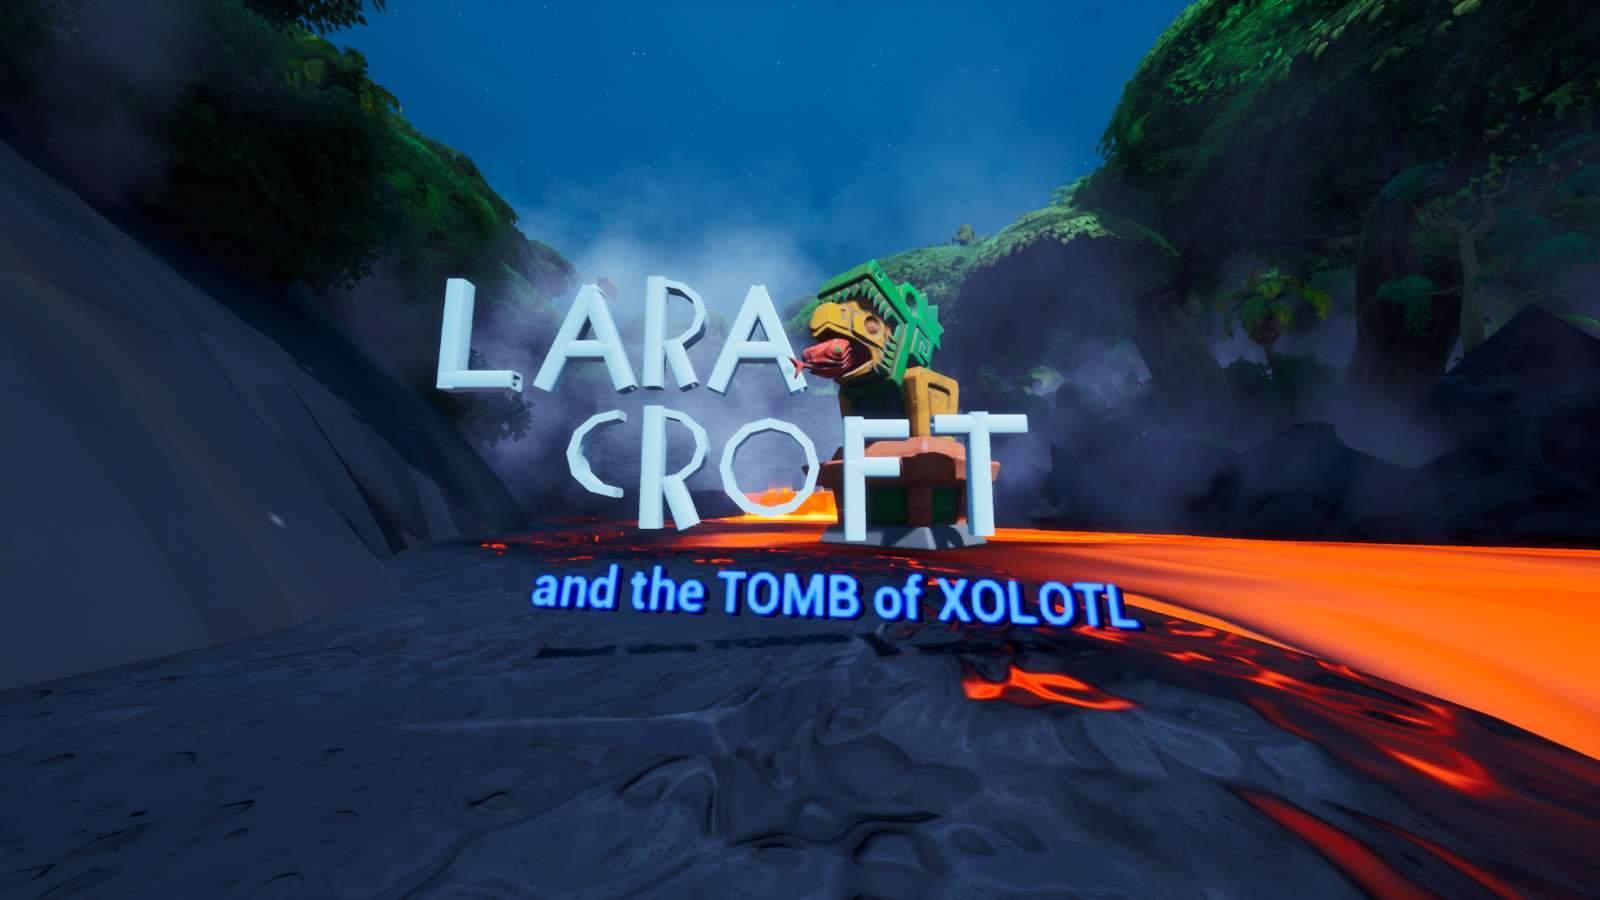 LARA CROFT AND THE TOMB OF XOLOTL